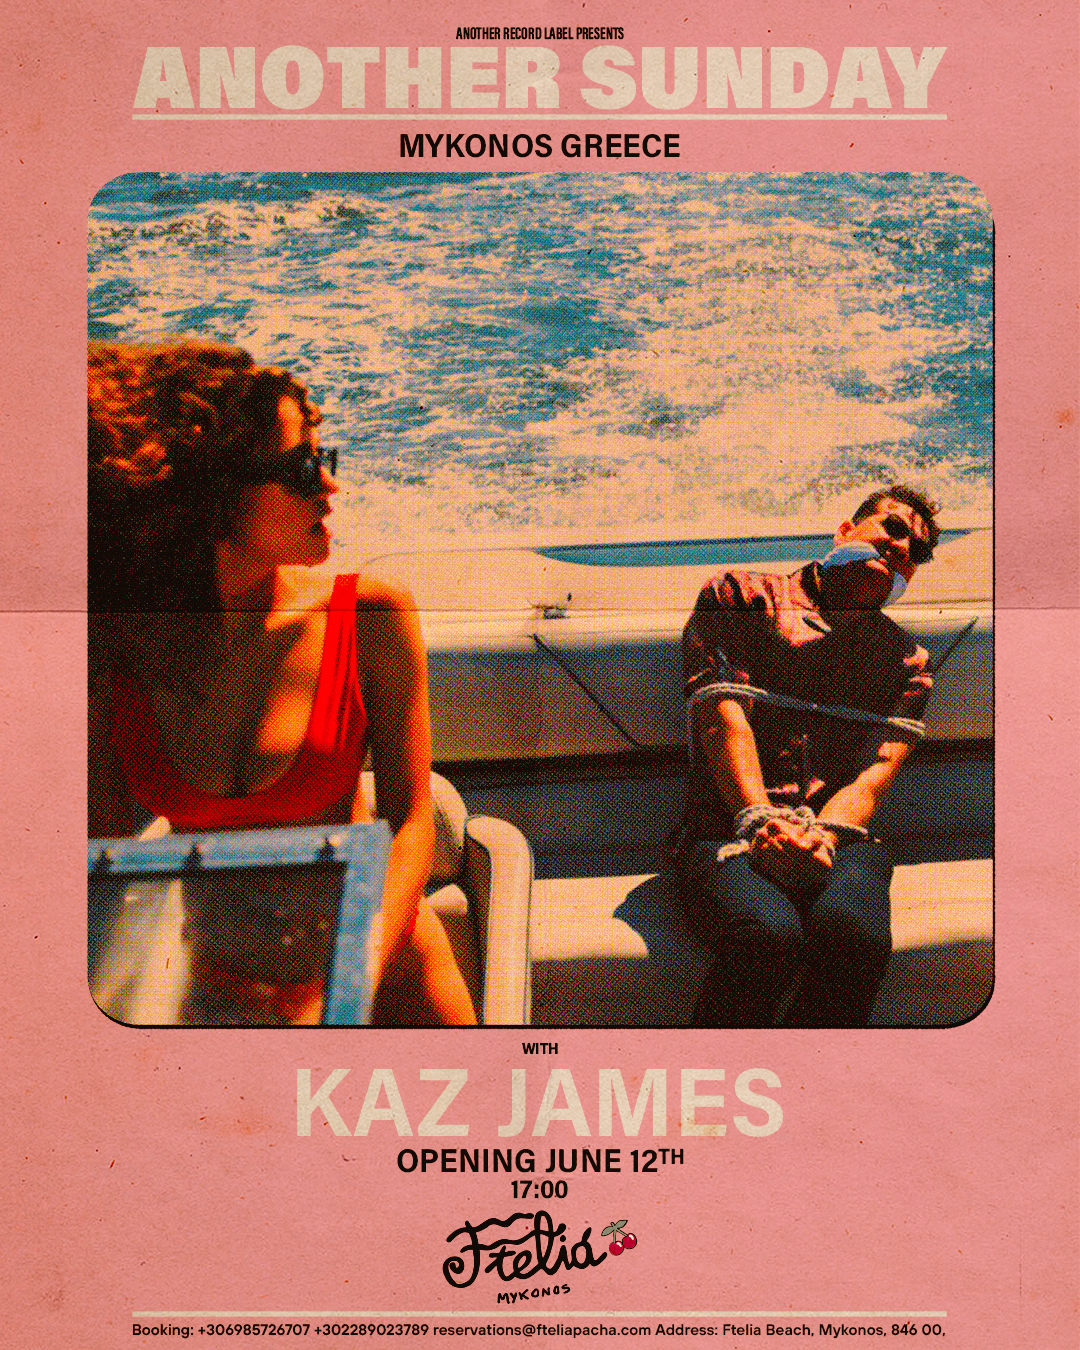 Lire la suite à propos de l’article Fteliá Pacha Mykonos présente « Another Sunday with Kaz James » : résidence exclusive de Kaz James d’une durée de quinze semaines, le 12 juin 2022